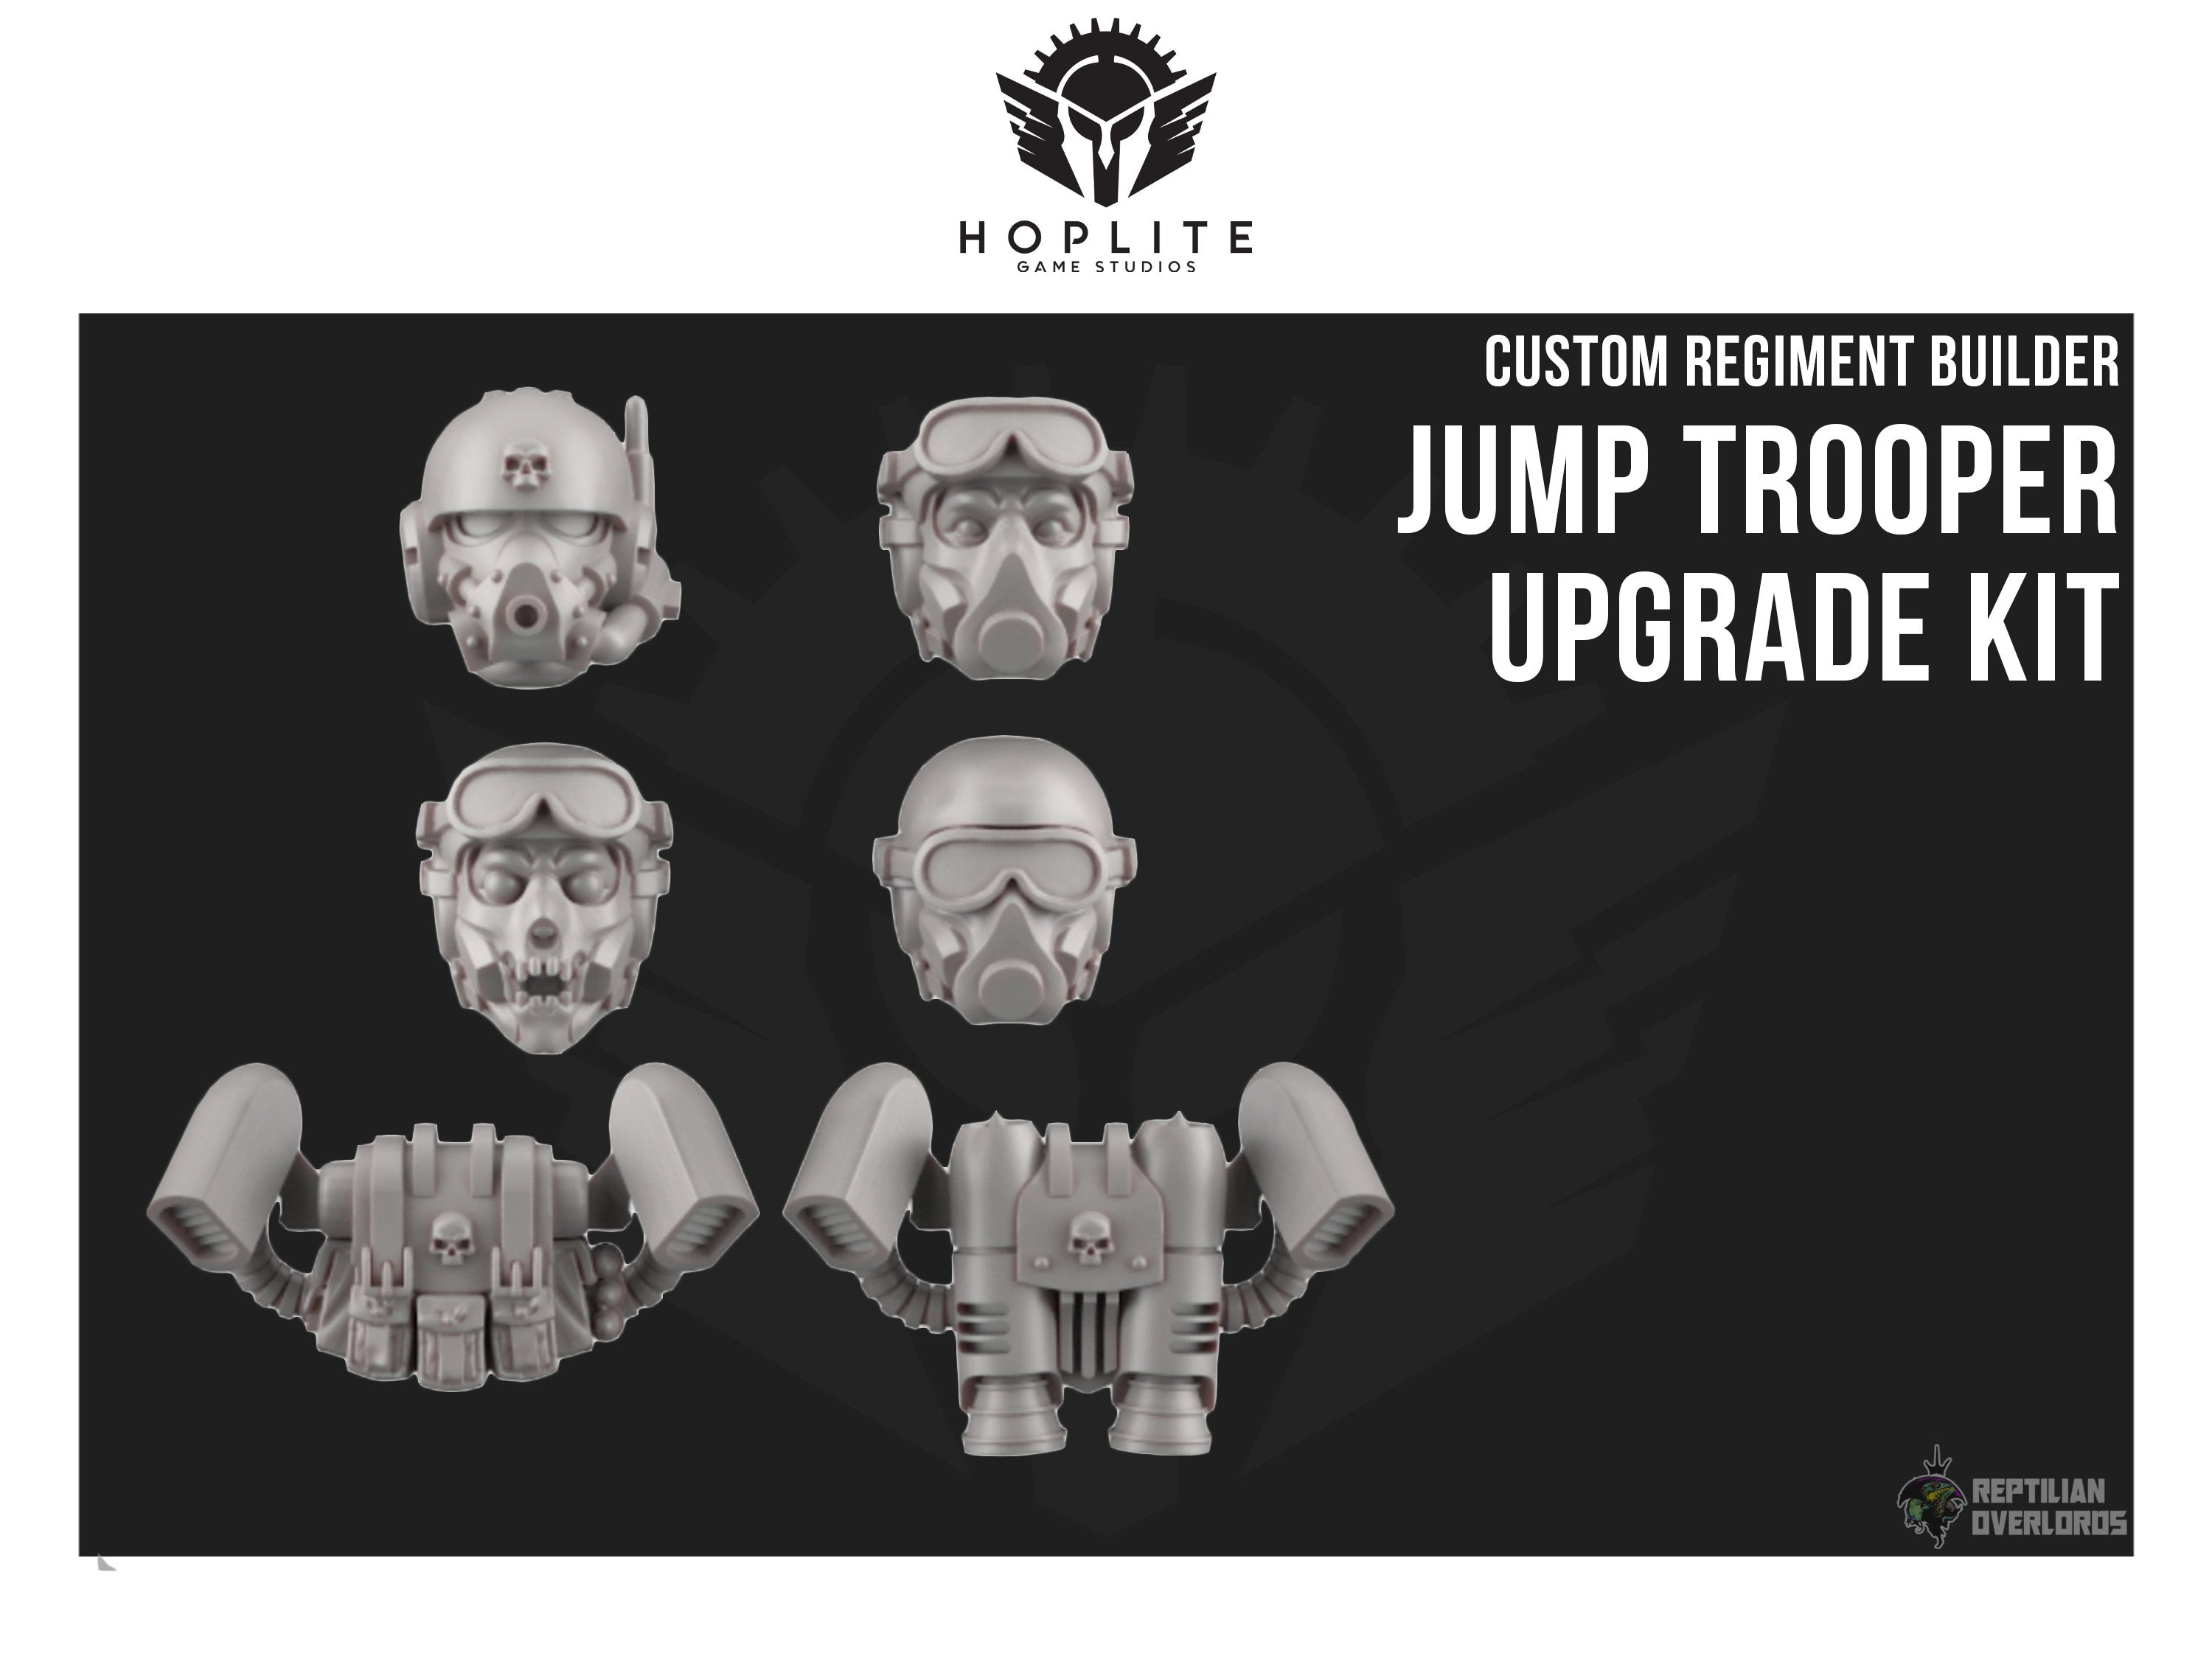 Piezas: Kit de actualización Jump Trooper (x10) | Señores supremos reptilianos | 32mm